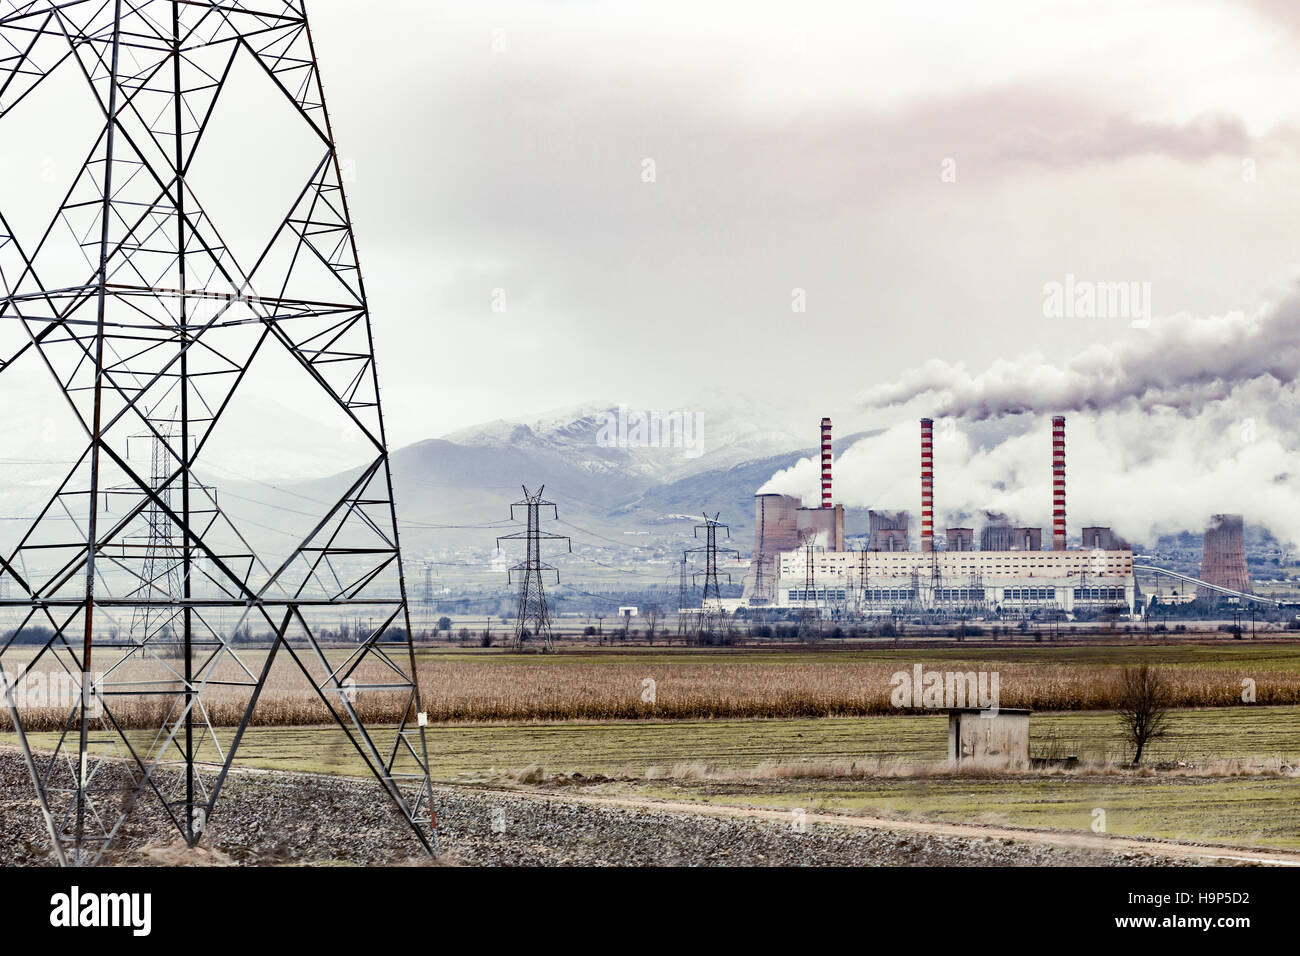 Torres de líneas eléctricas cerca de la planta de energía nuclear Foto de stock